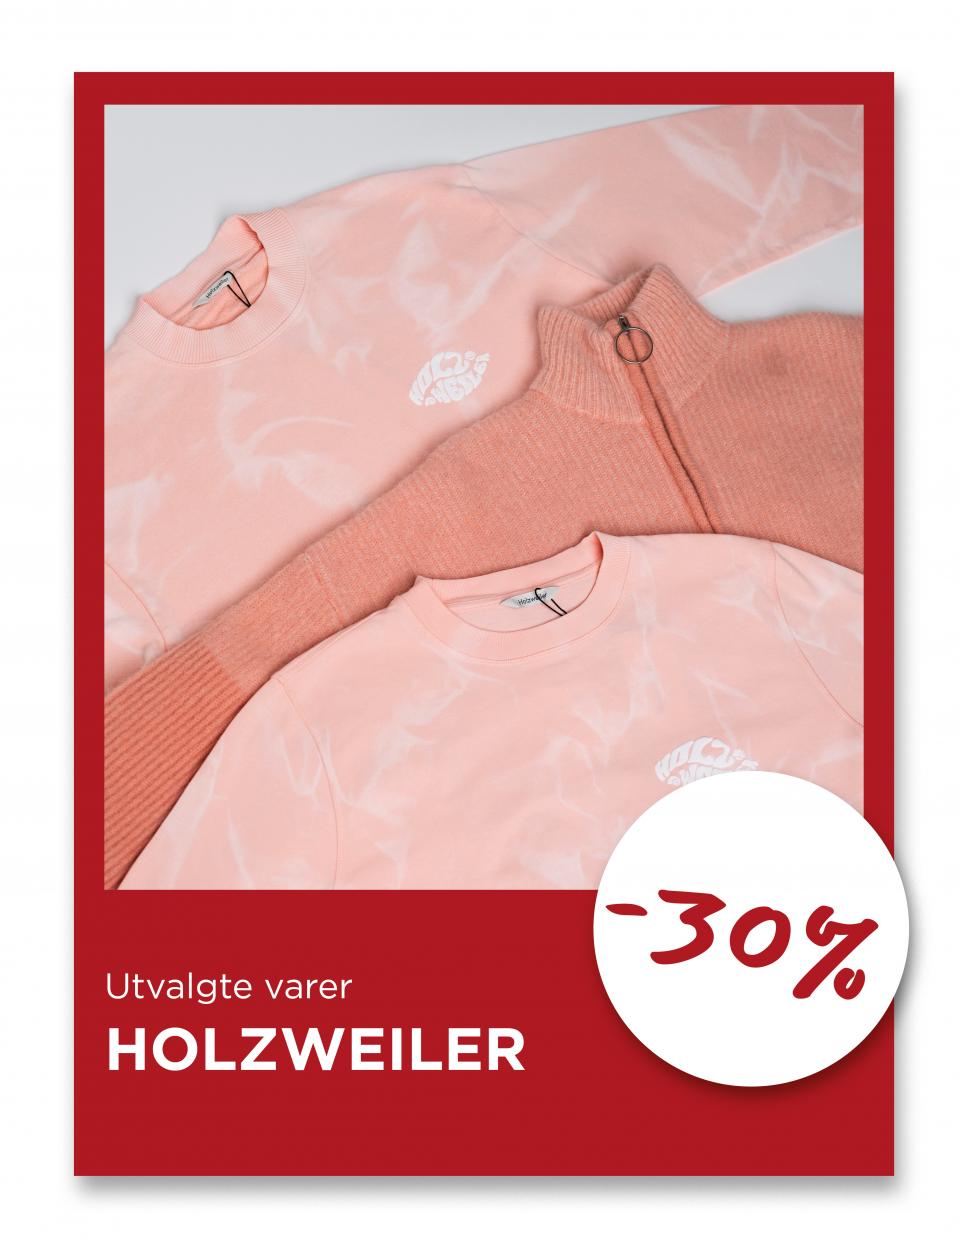 Utvalgte varer fra Holzweiler, -30%